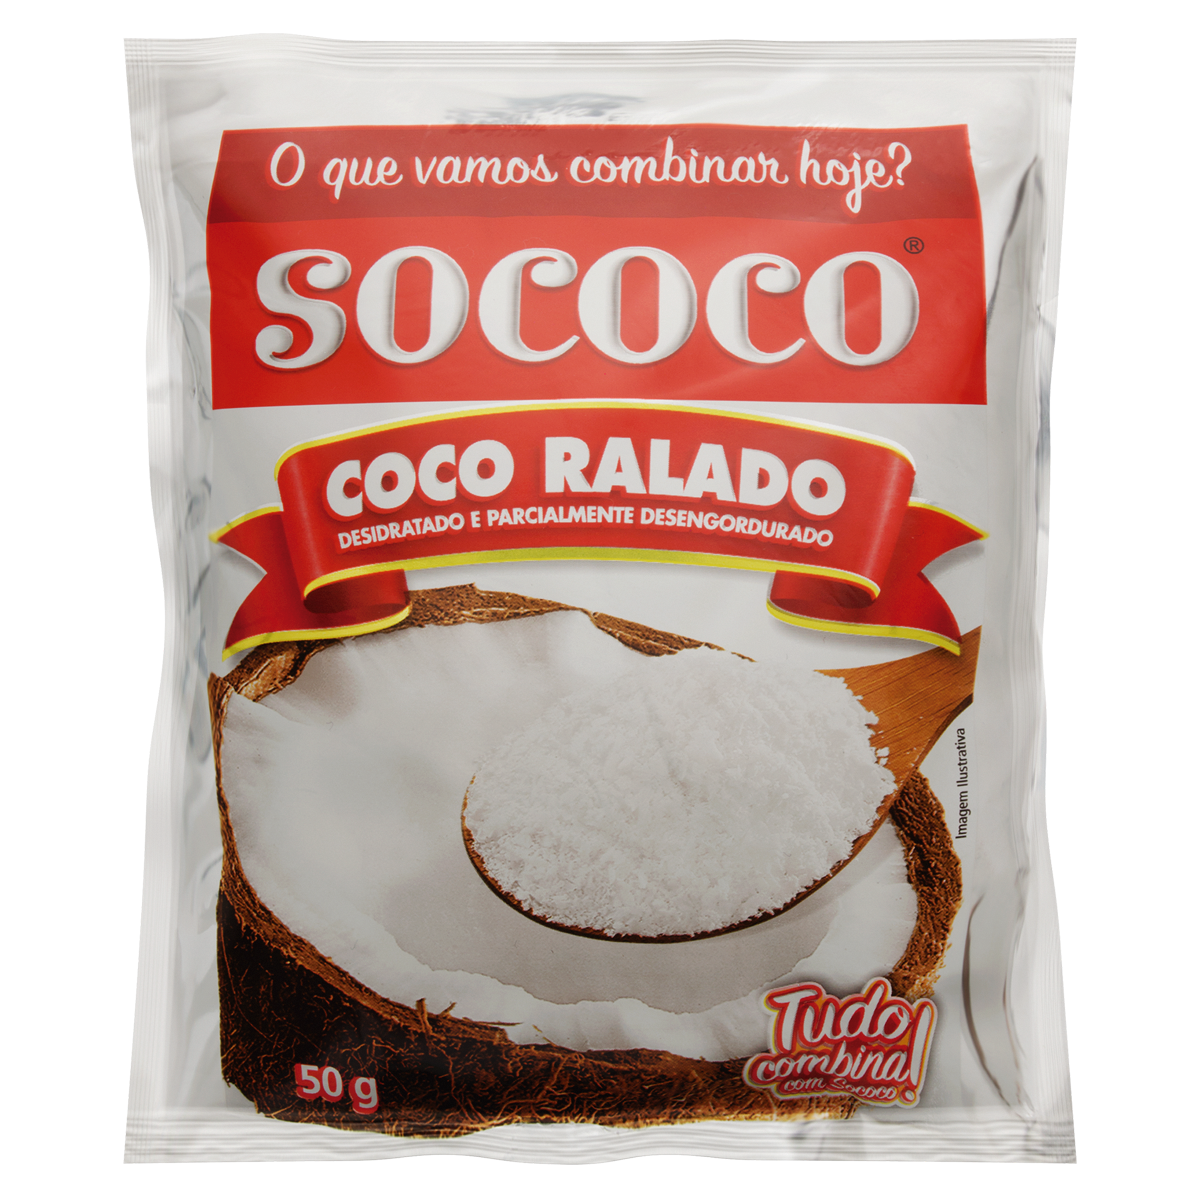 7896004400020 - COCO RALADO DESIDRATADO SOCOCO PACOTE 50G